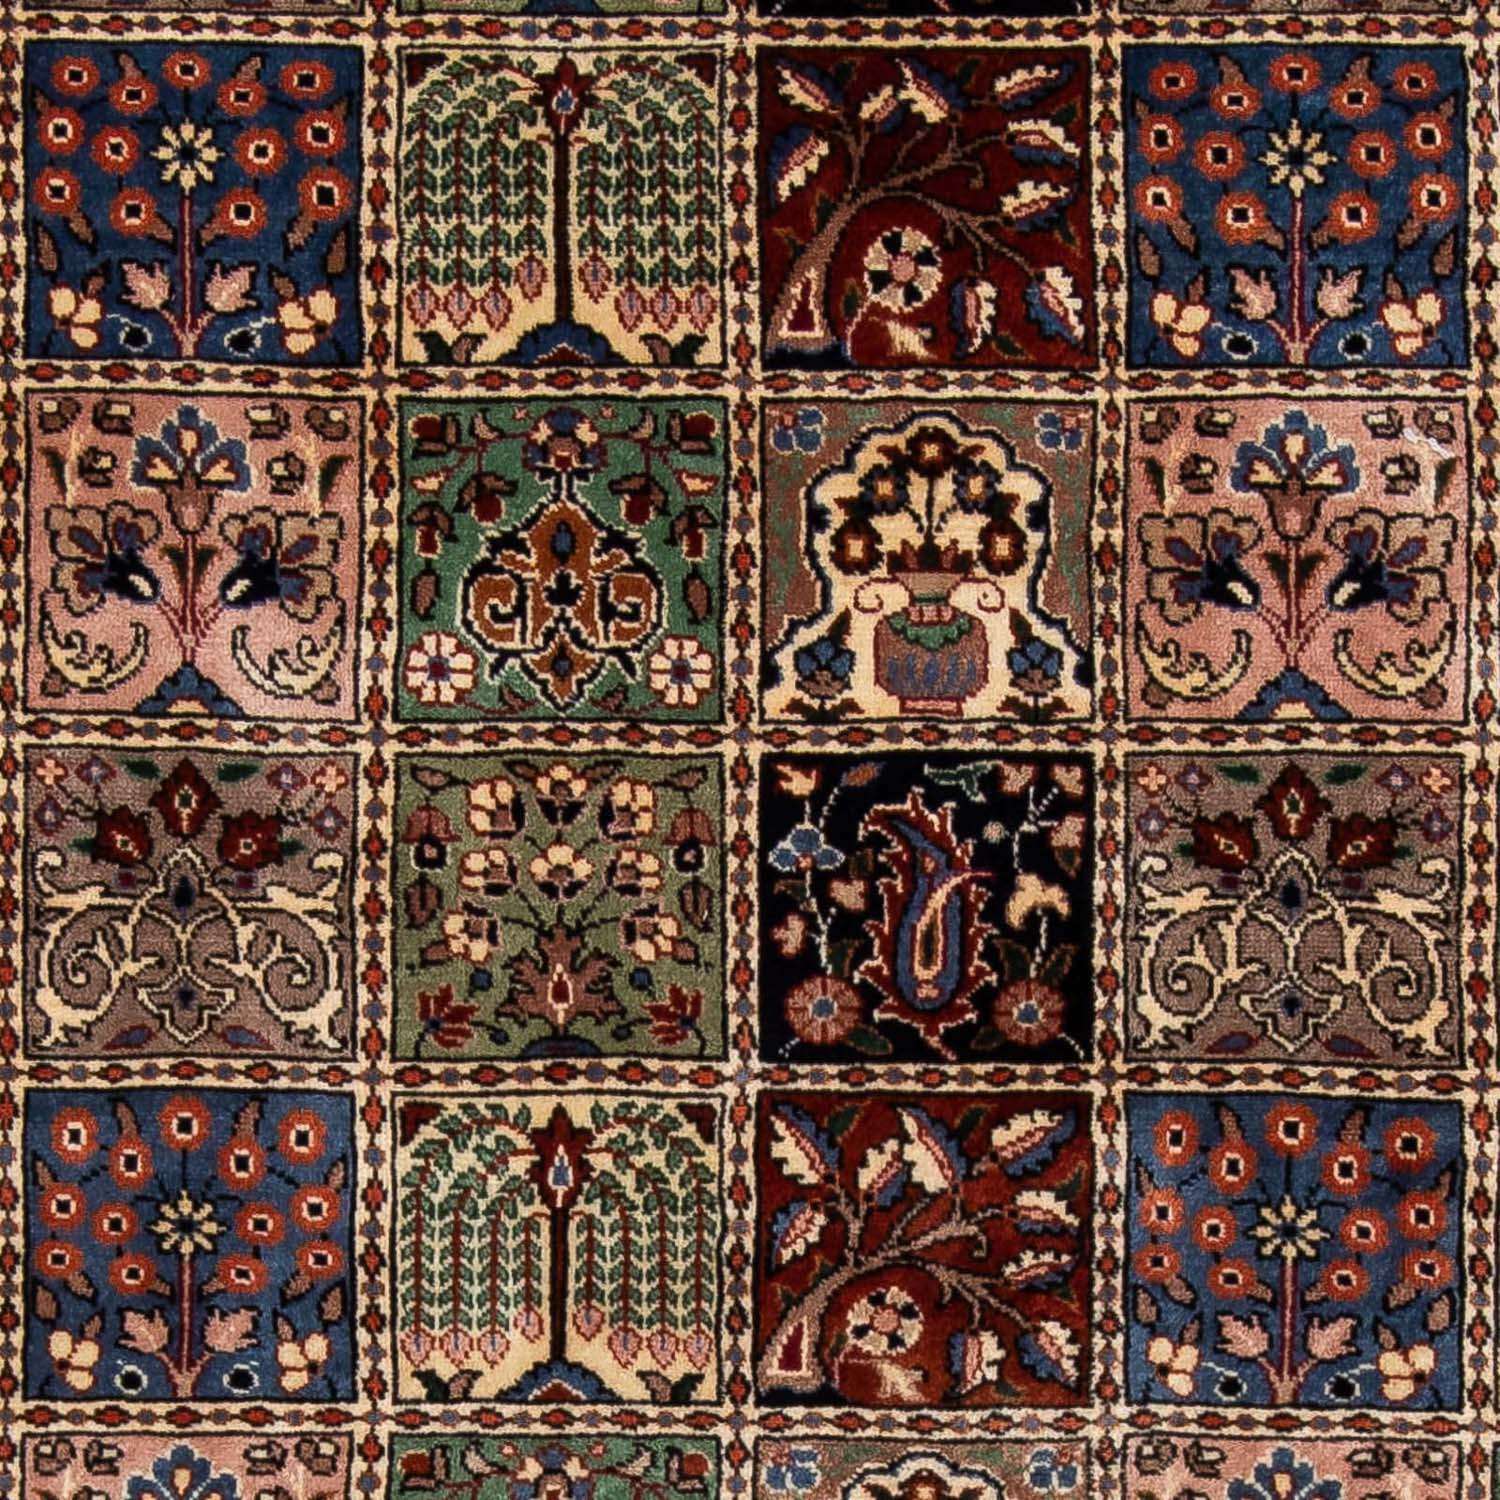 Tapis persan - Classique - 290 x 205 cm - multicolore